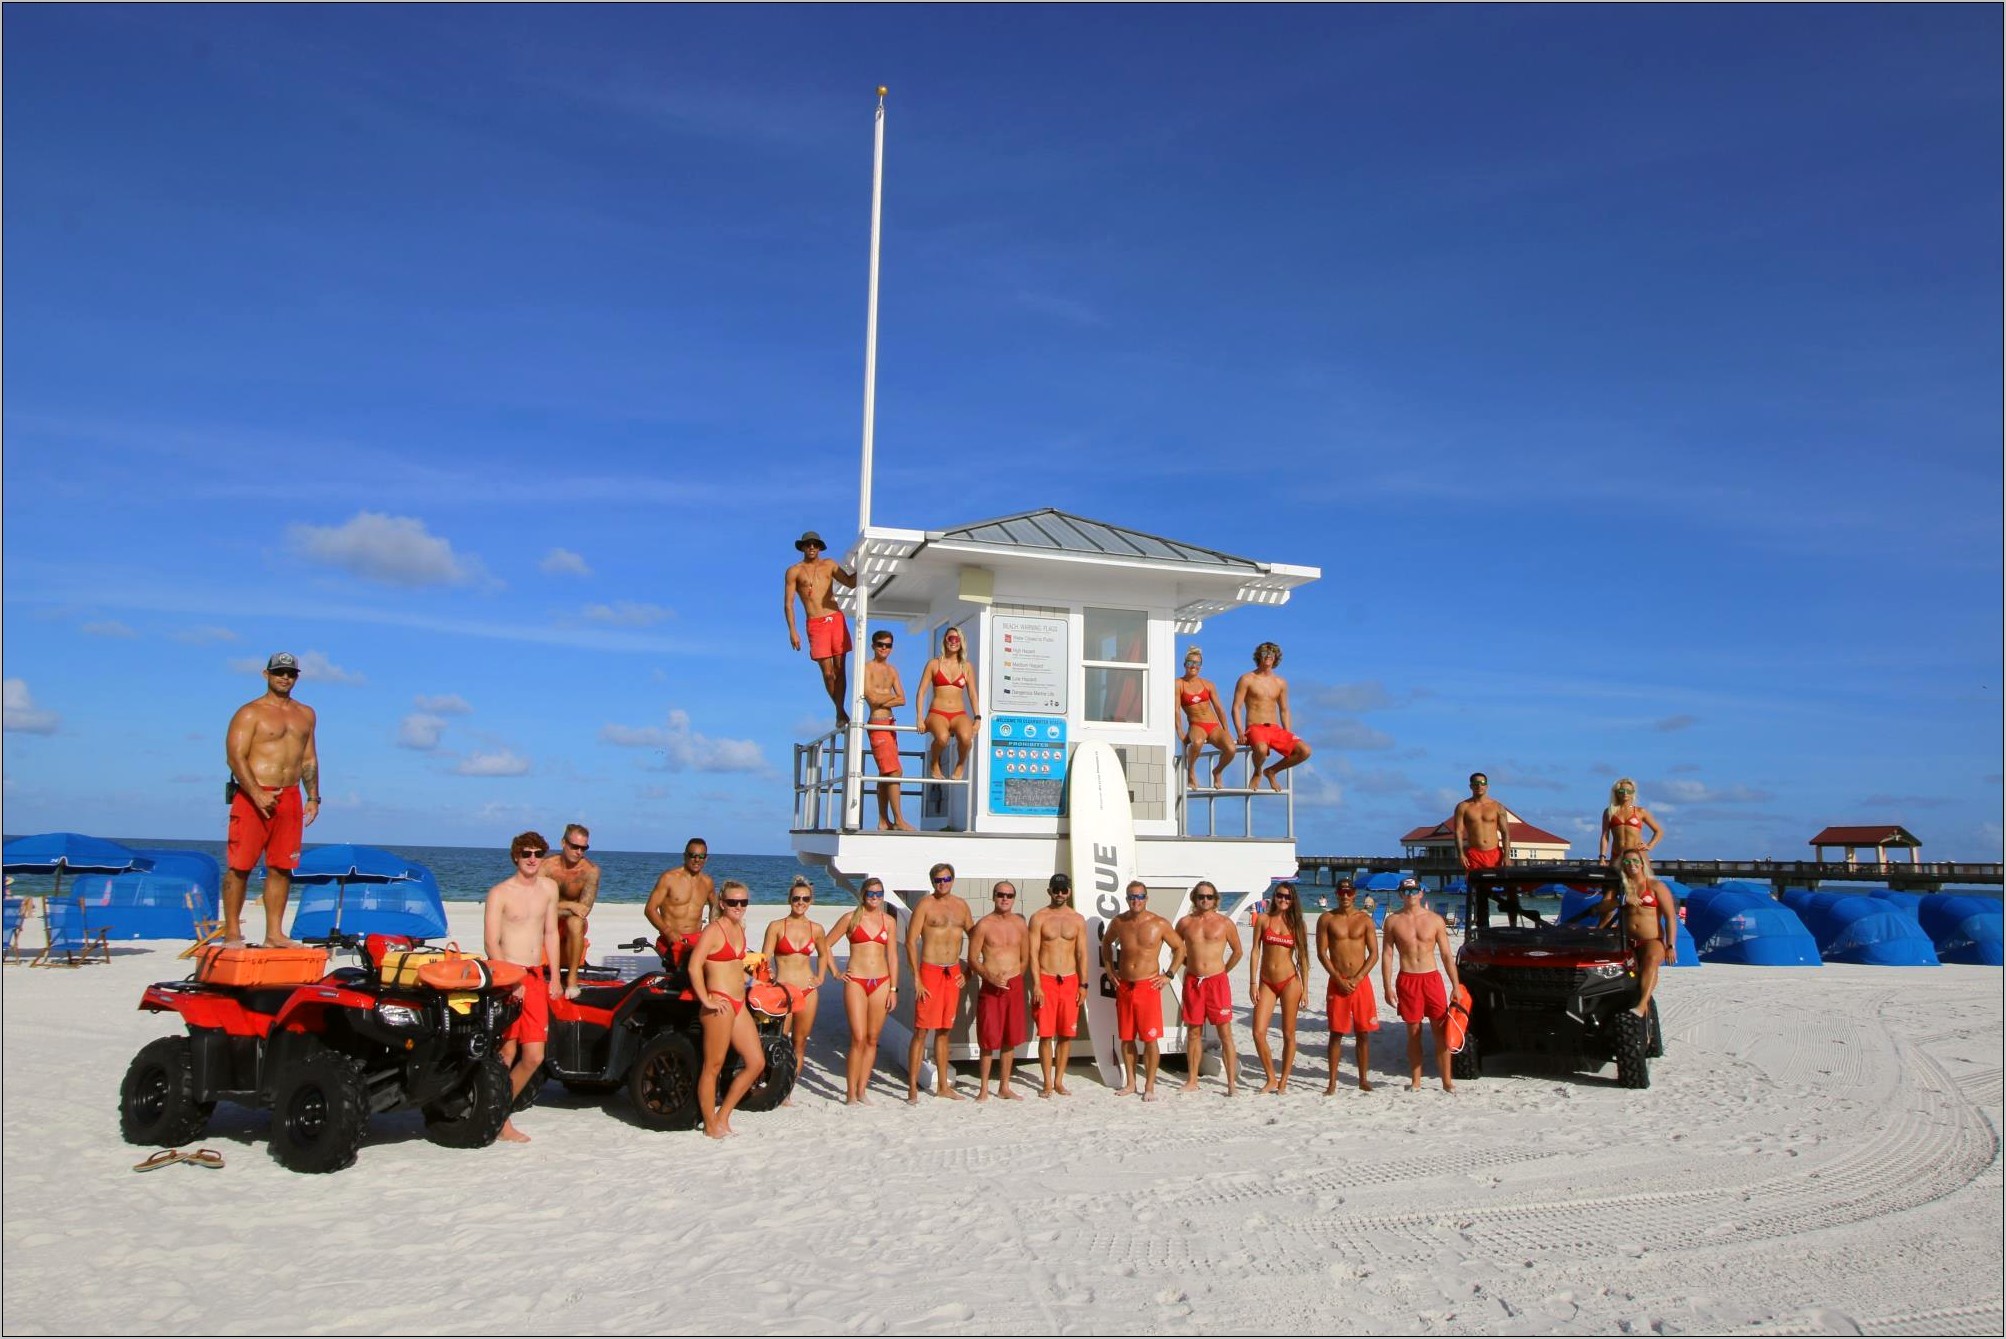 Beach Lifeguarding Pros To Put On Resume